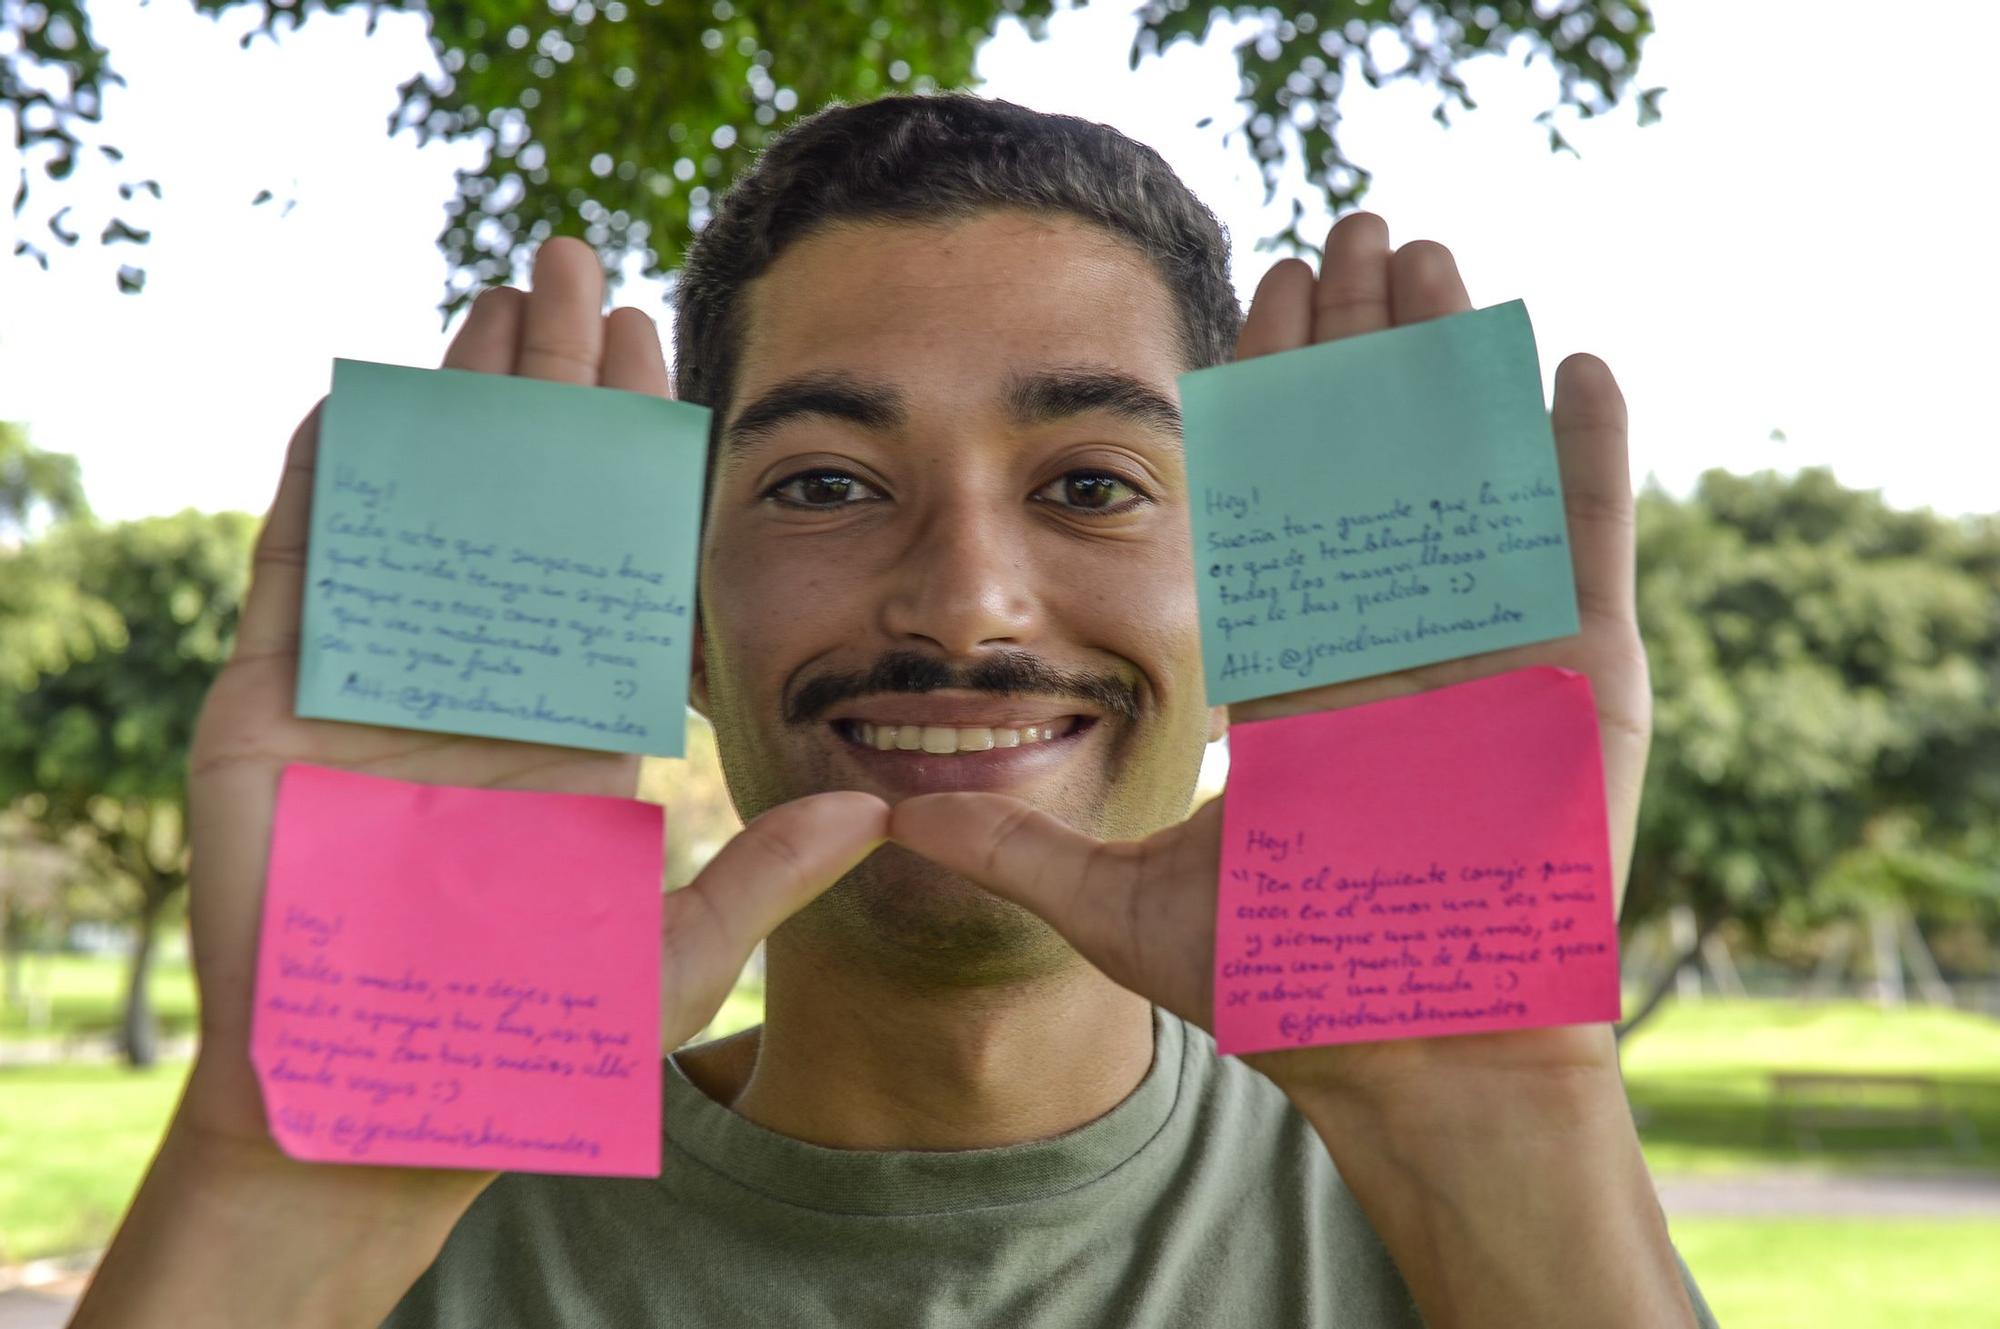 Jeziel Ruiz y sus mensajes positivos alrededor de la ciudad